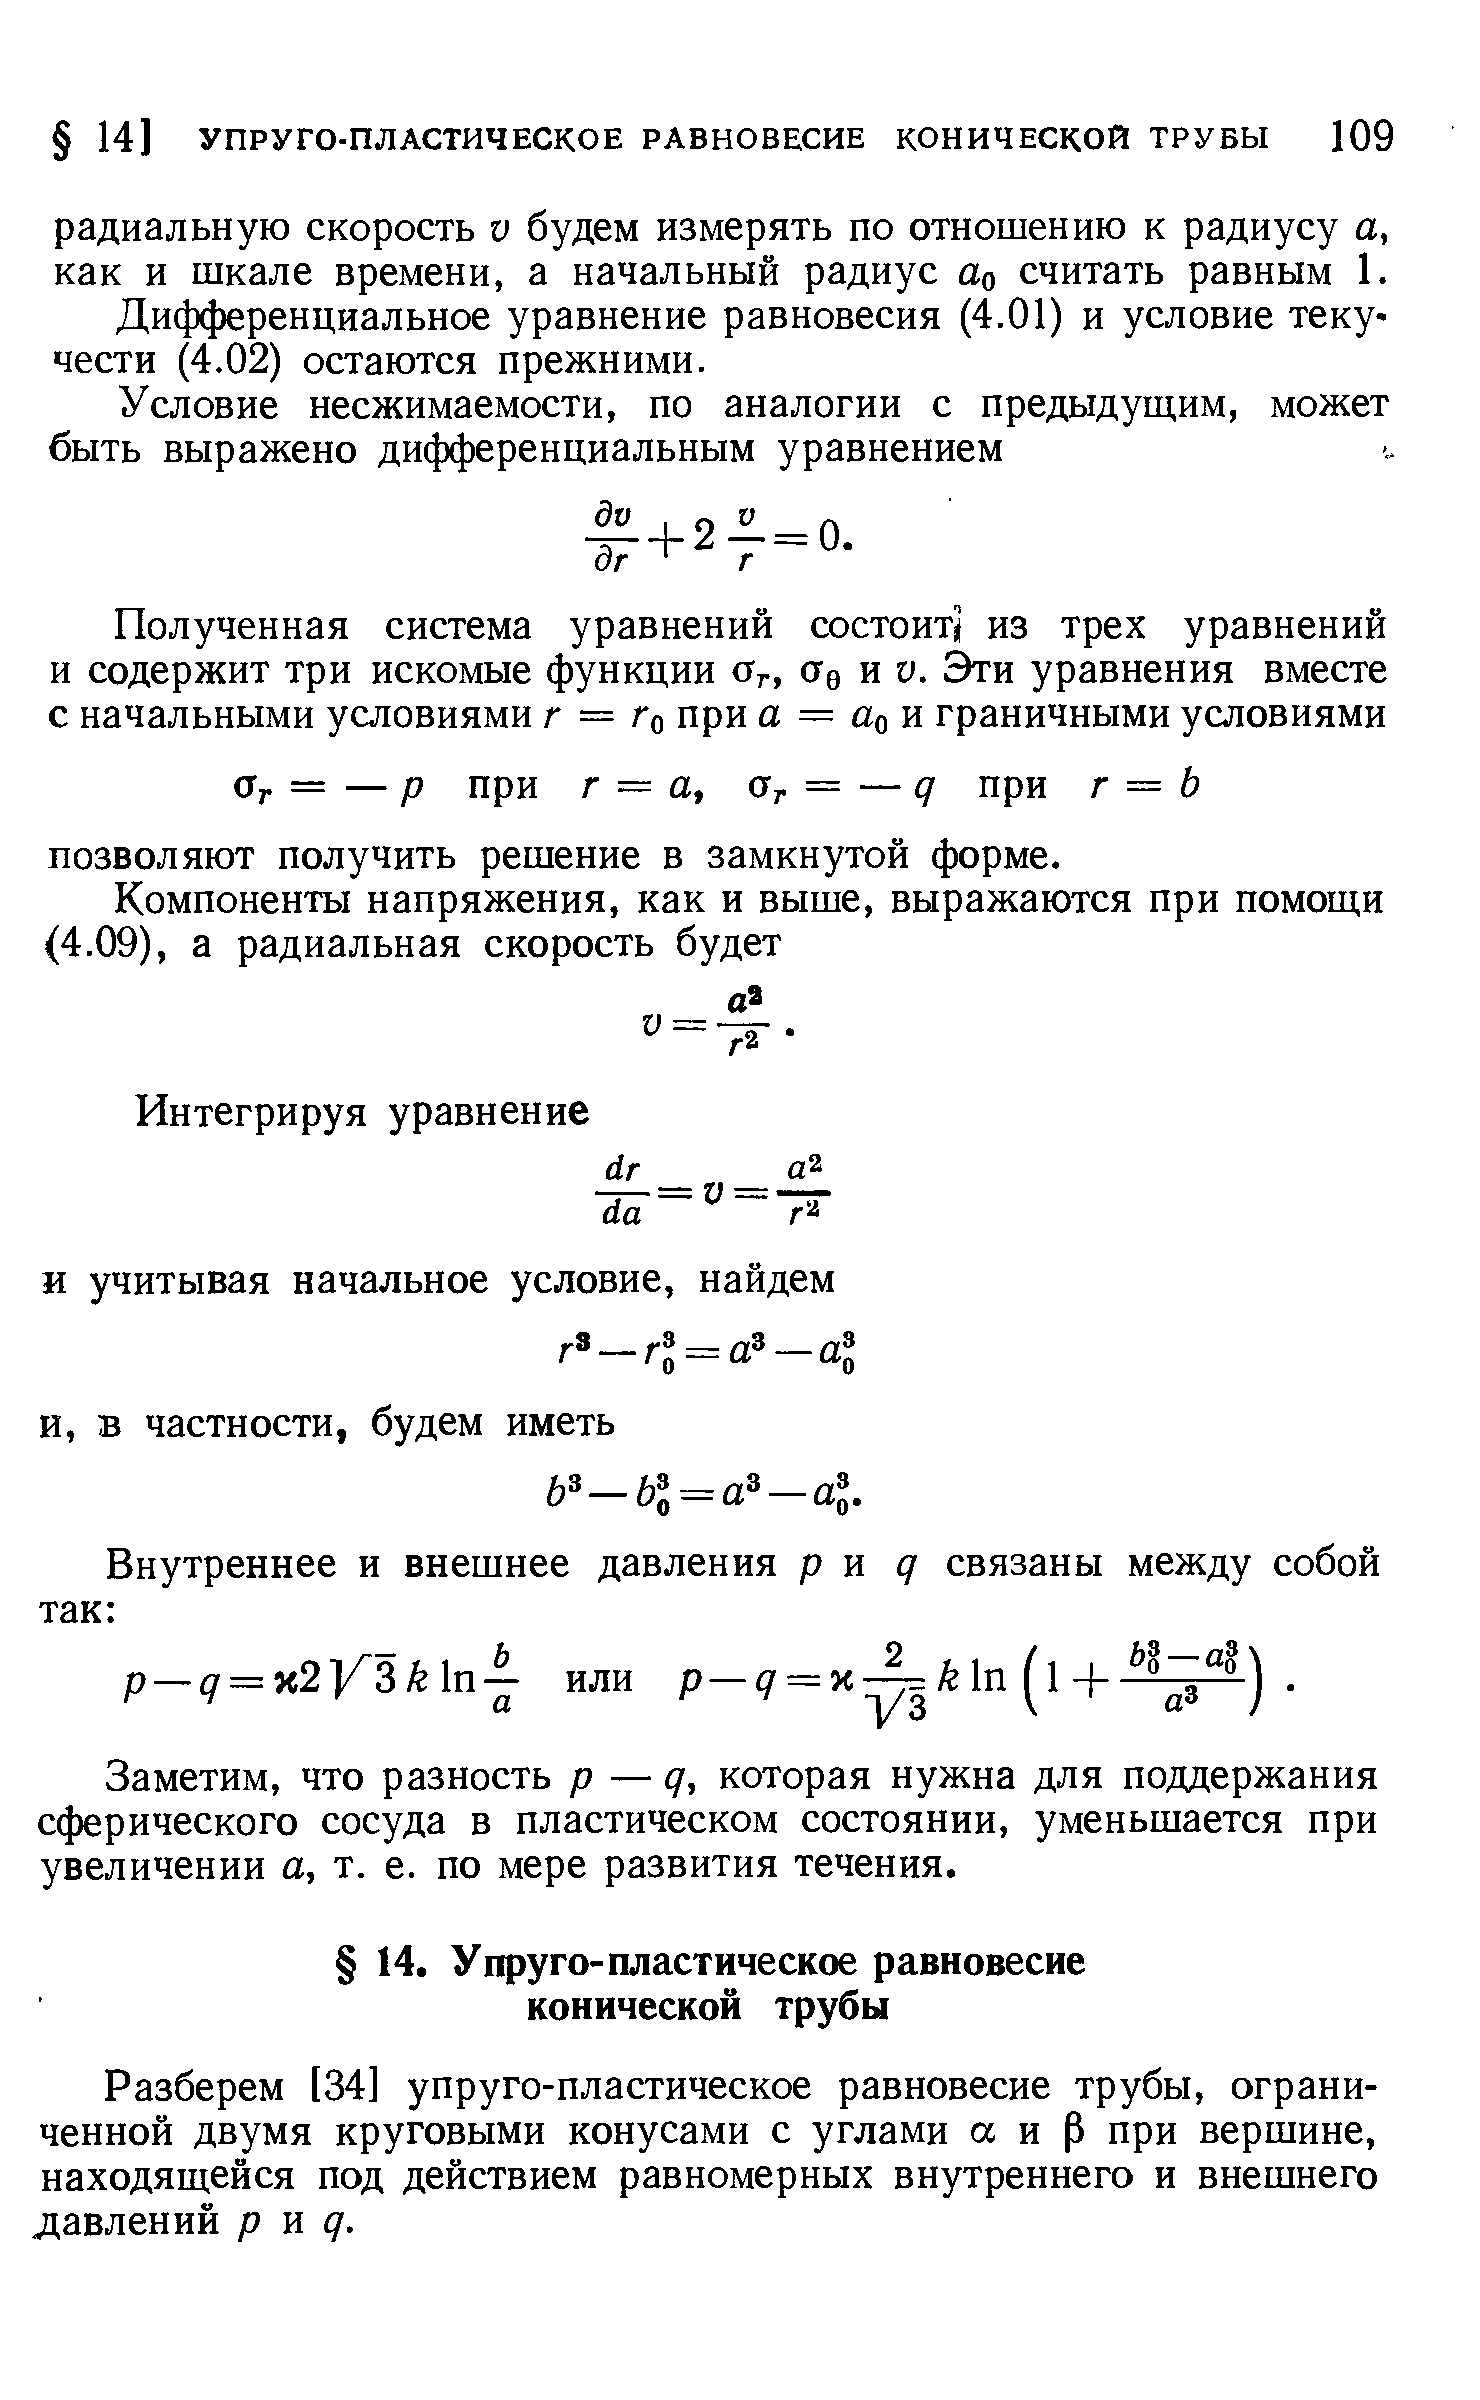 Дифференциальное уравнение равновесия (4.01) и условие текучести (4.02) остаются прежними.
